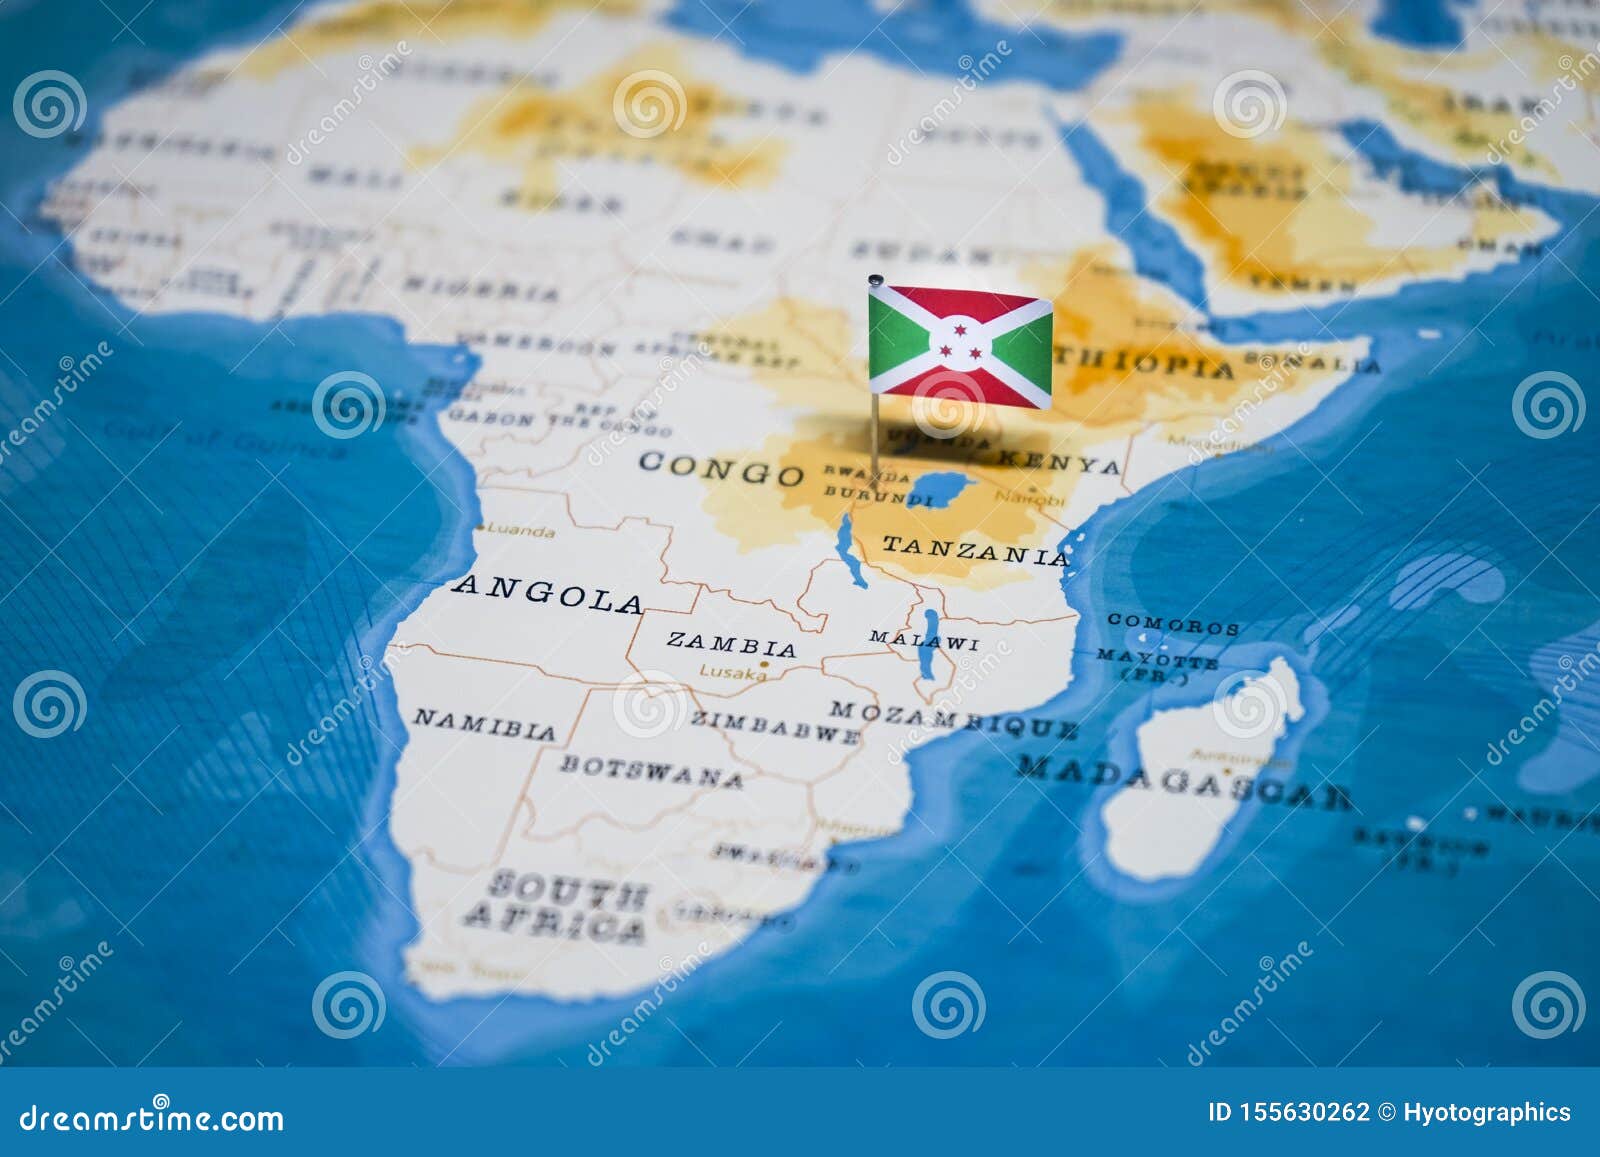 Флаг Бурунди Фото